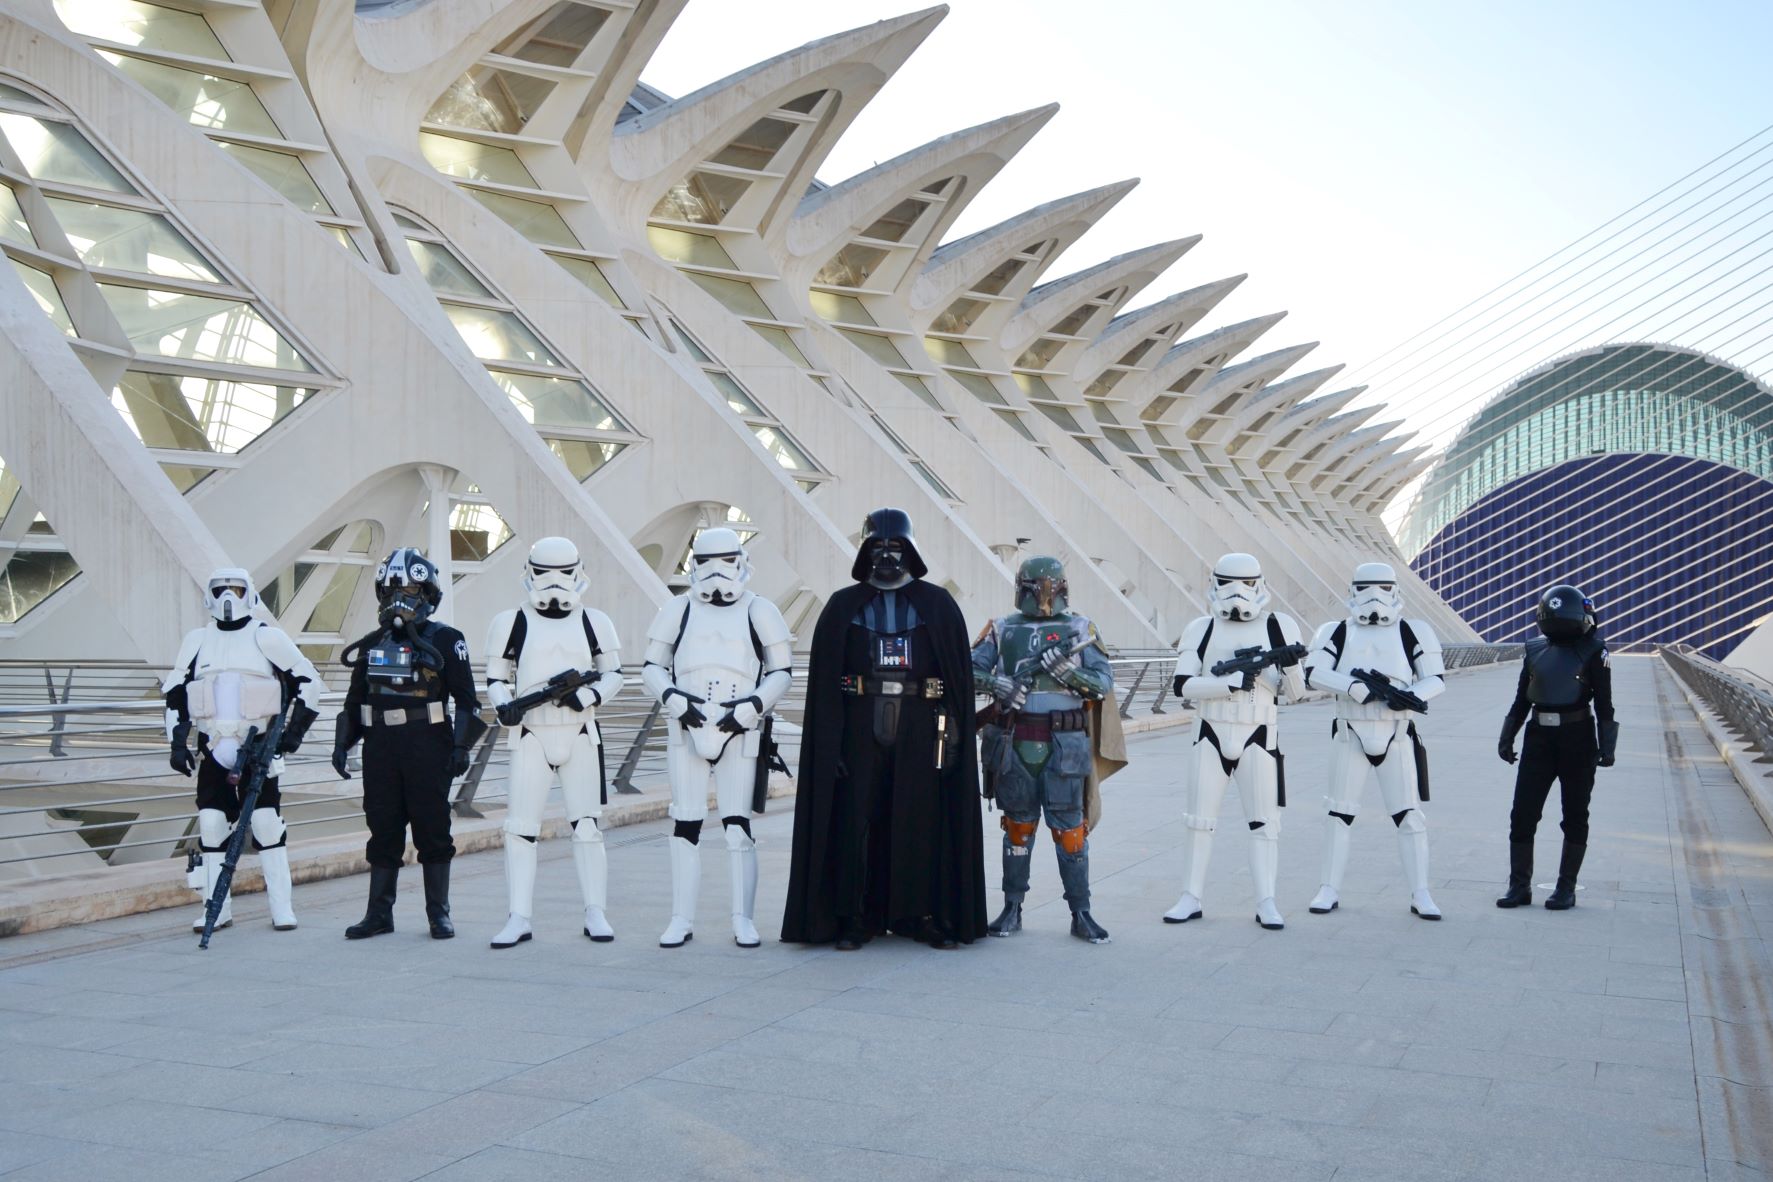 La Ciutat de Les Arts reúne este sábado a más de 400 personajes de Star Wars